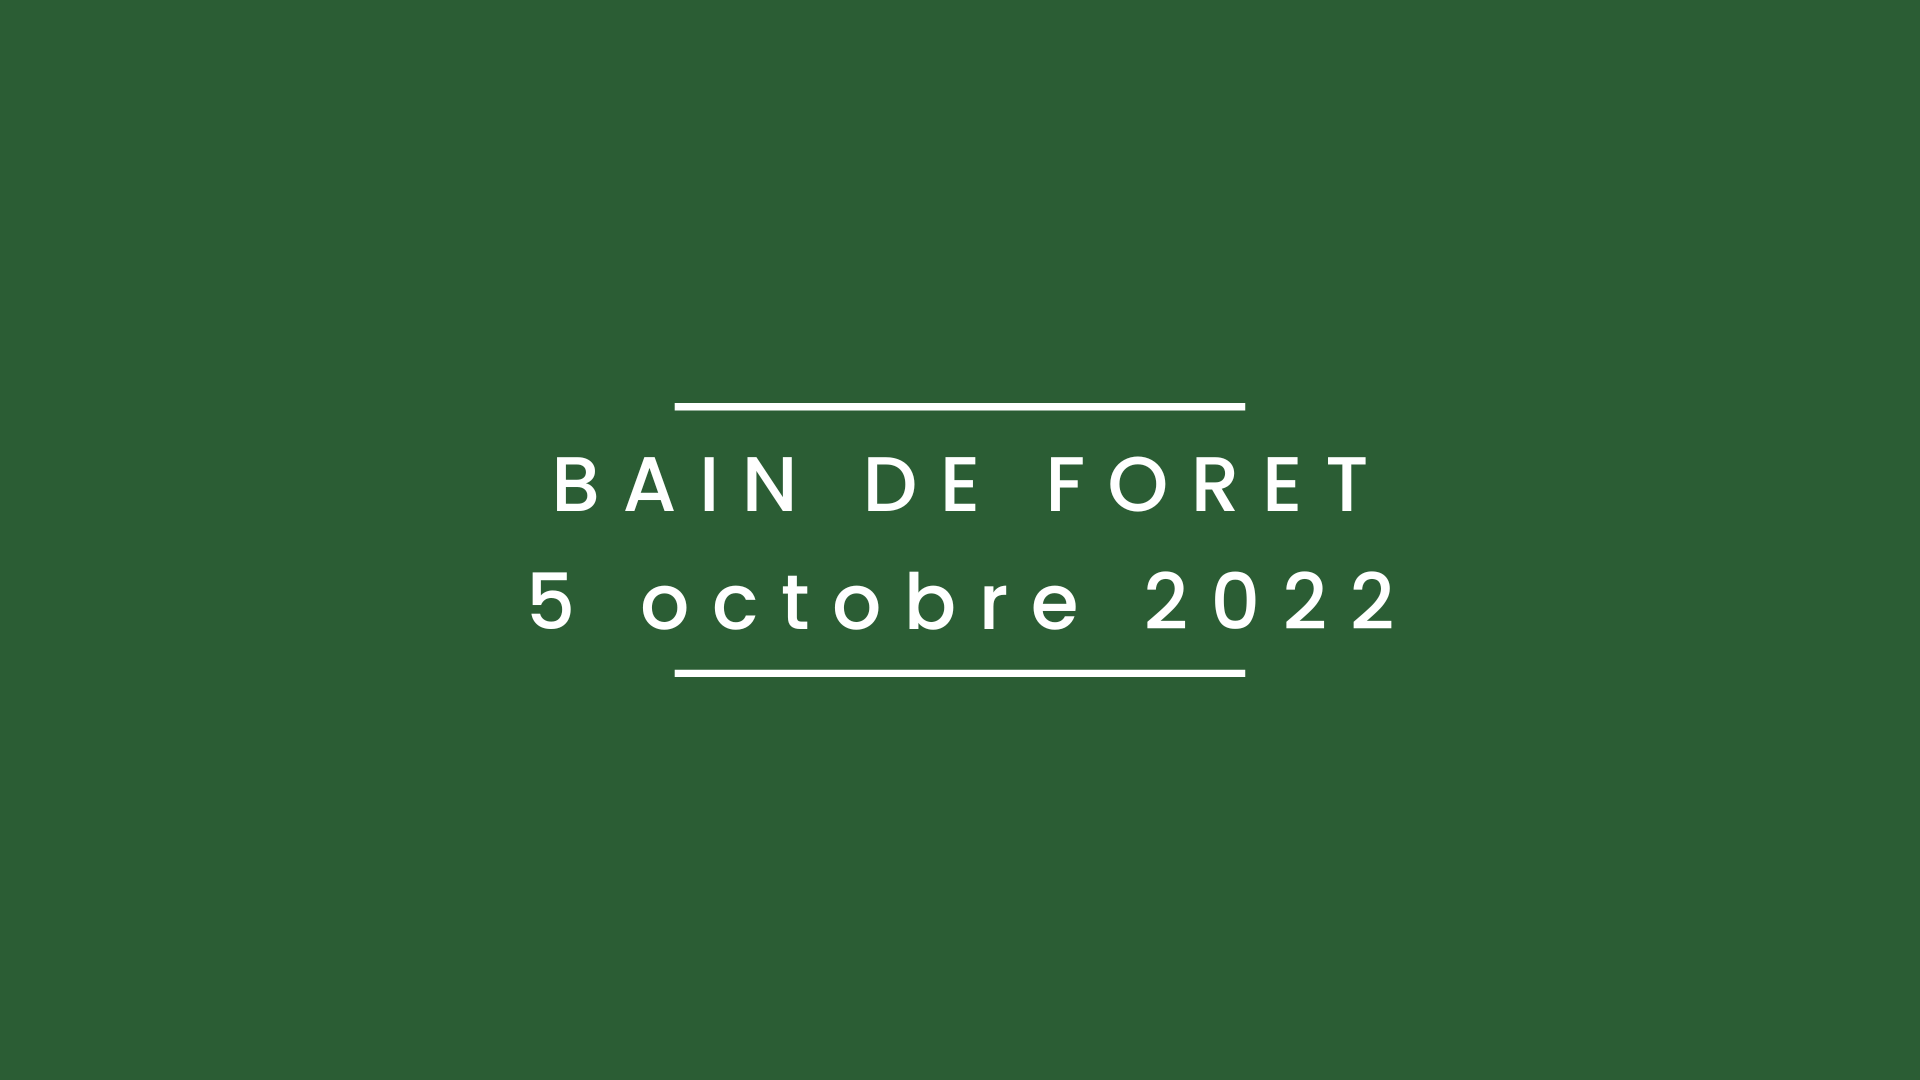 Bain de forêt 5 octobre 2022